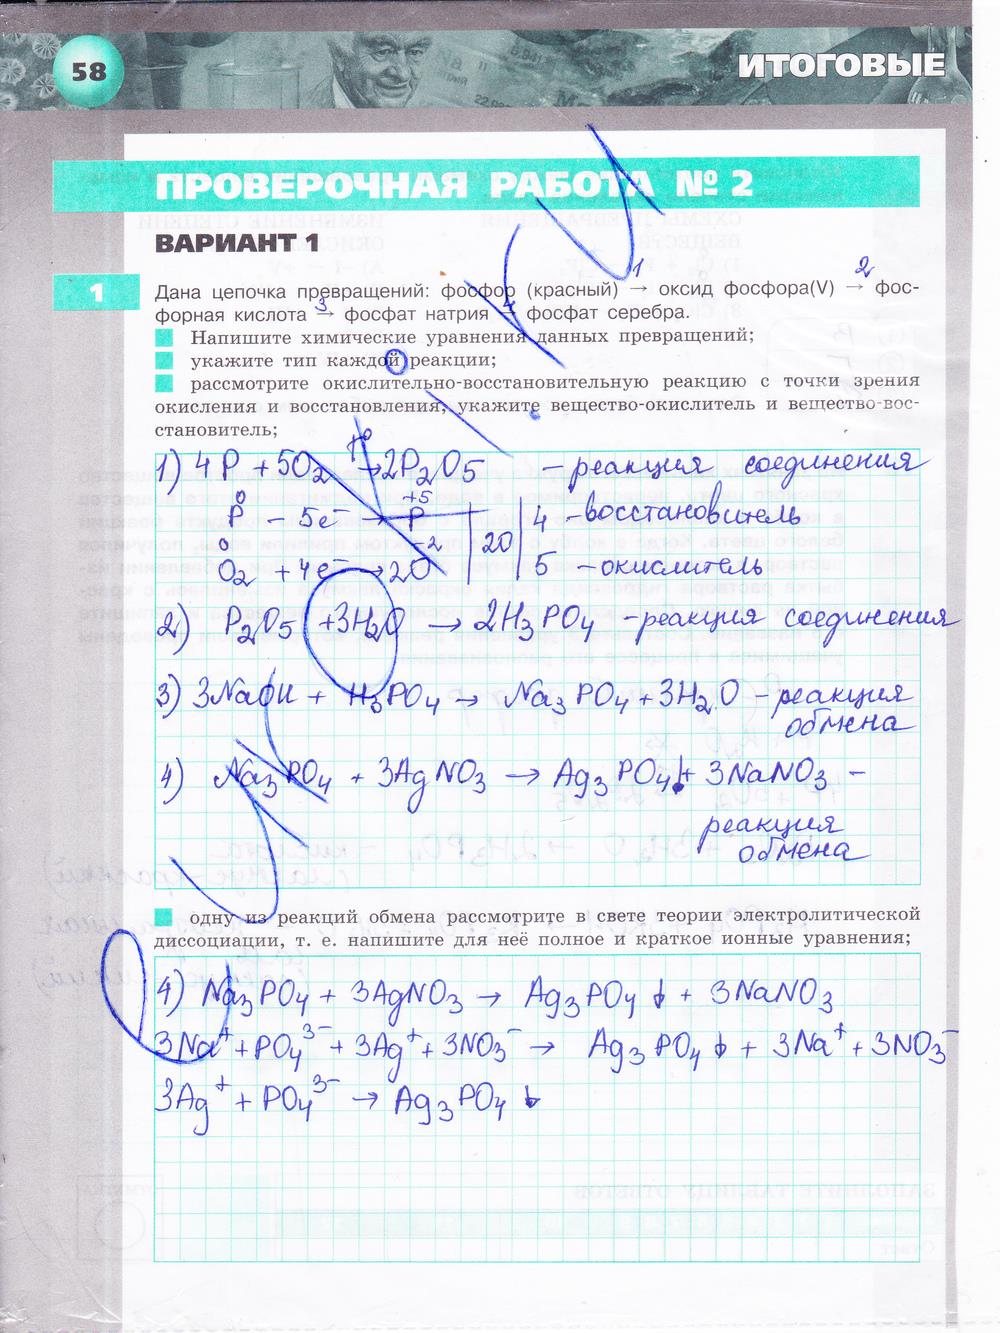 гдз 9 класс тетрадь-экзаменатор страница 58 химия Бобылева, Бирюлина